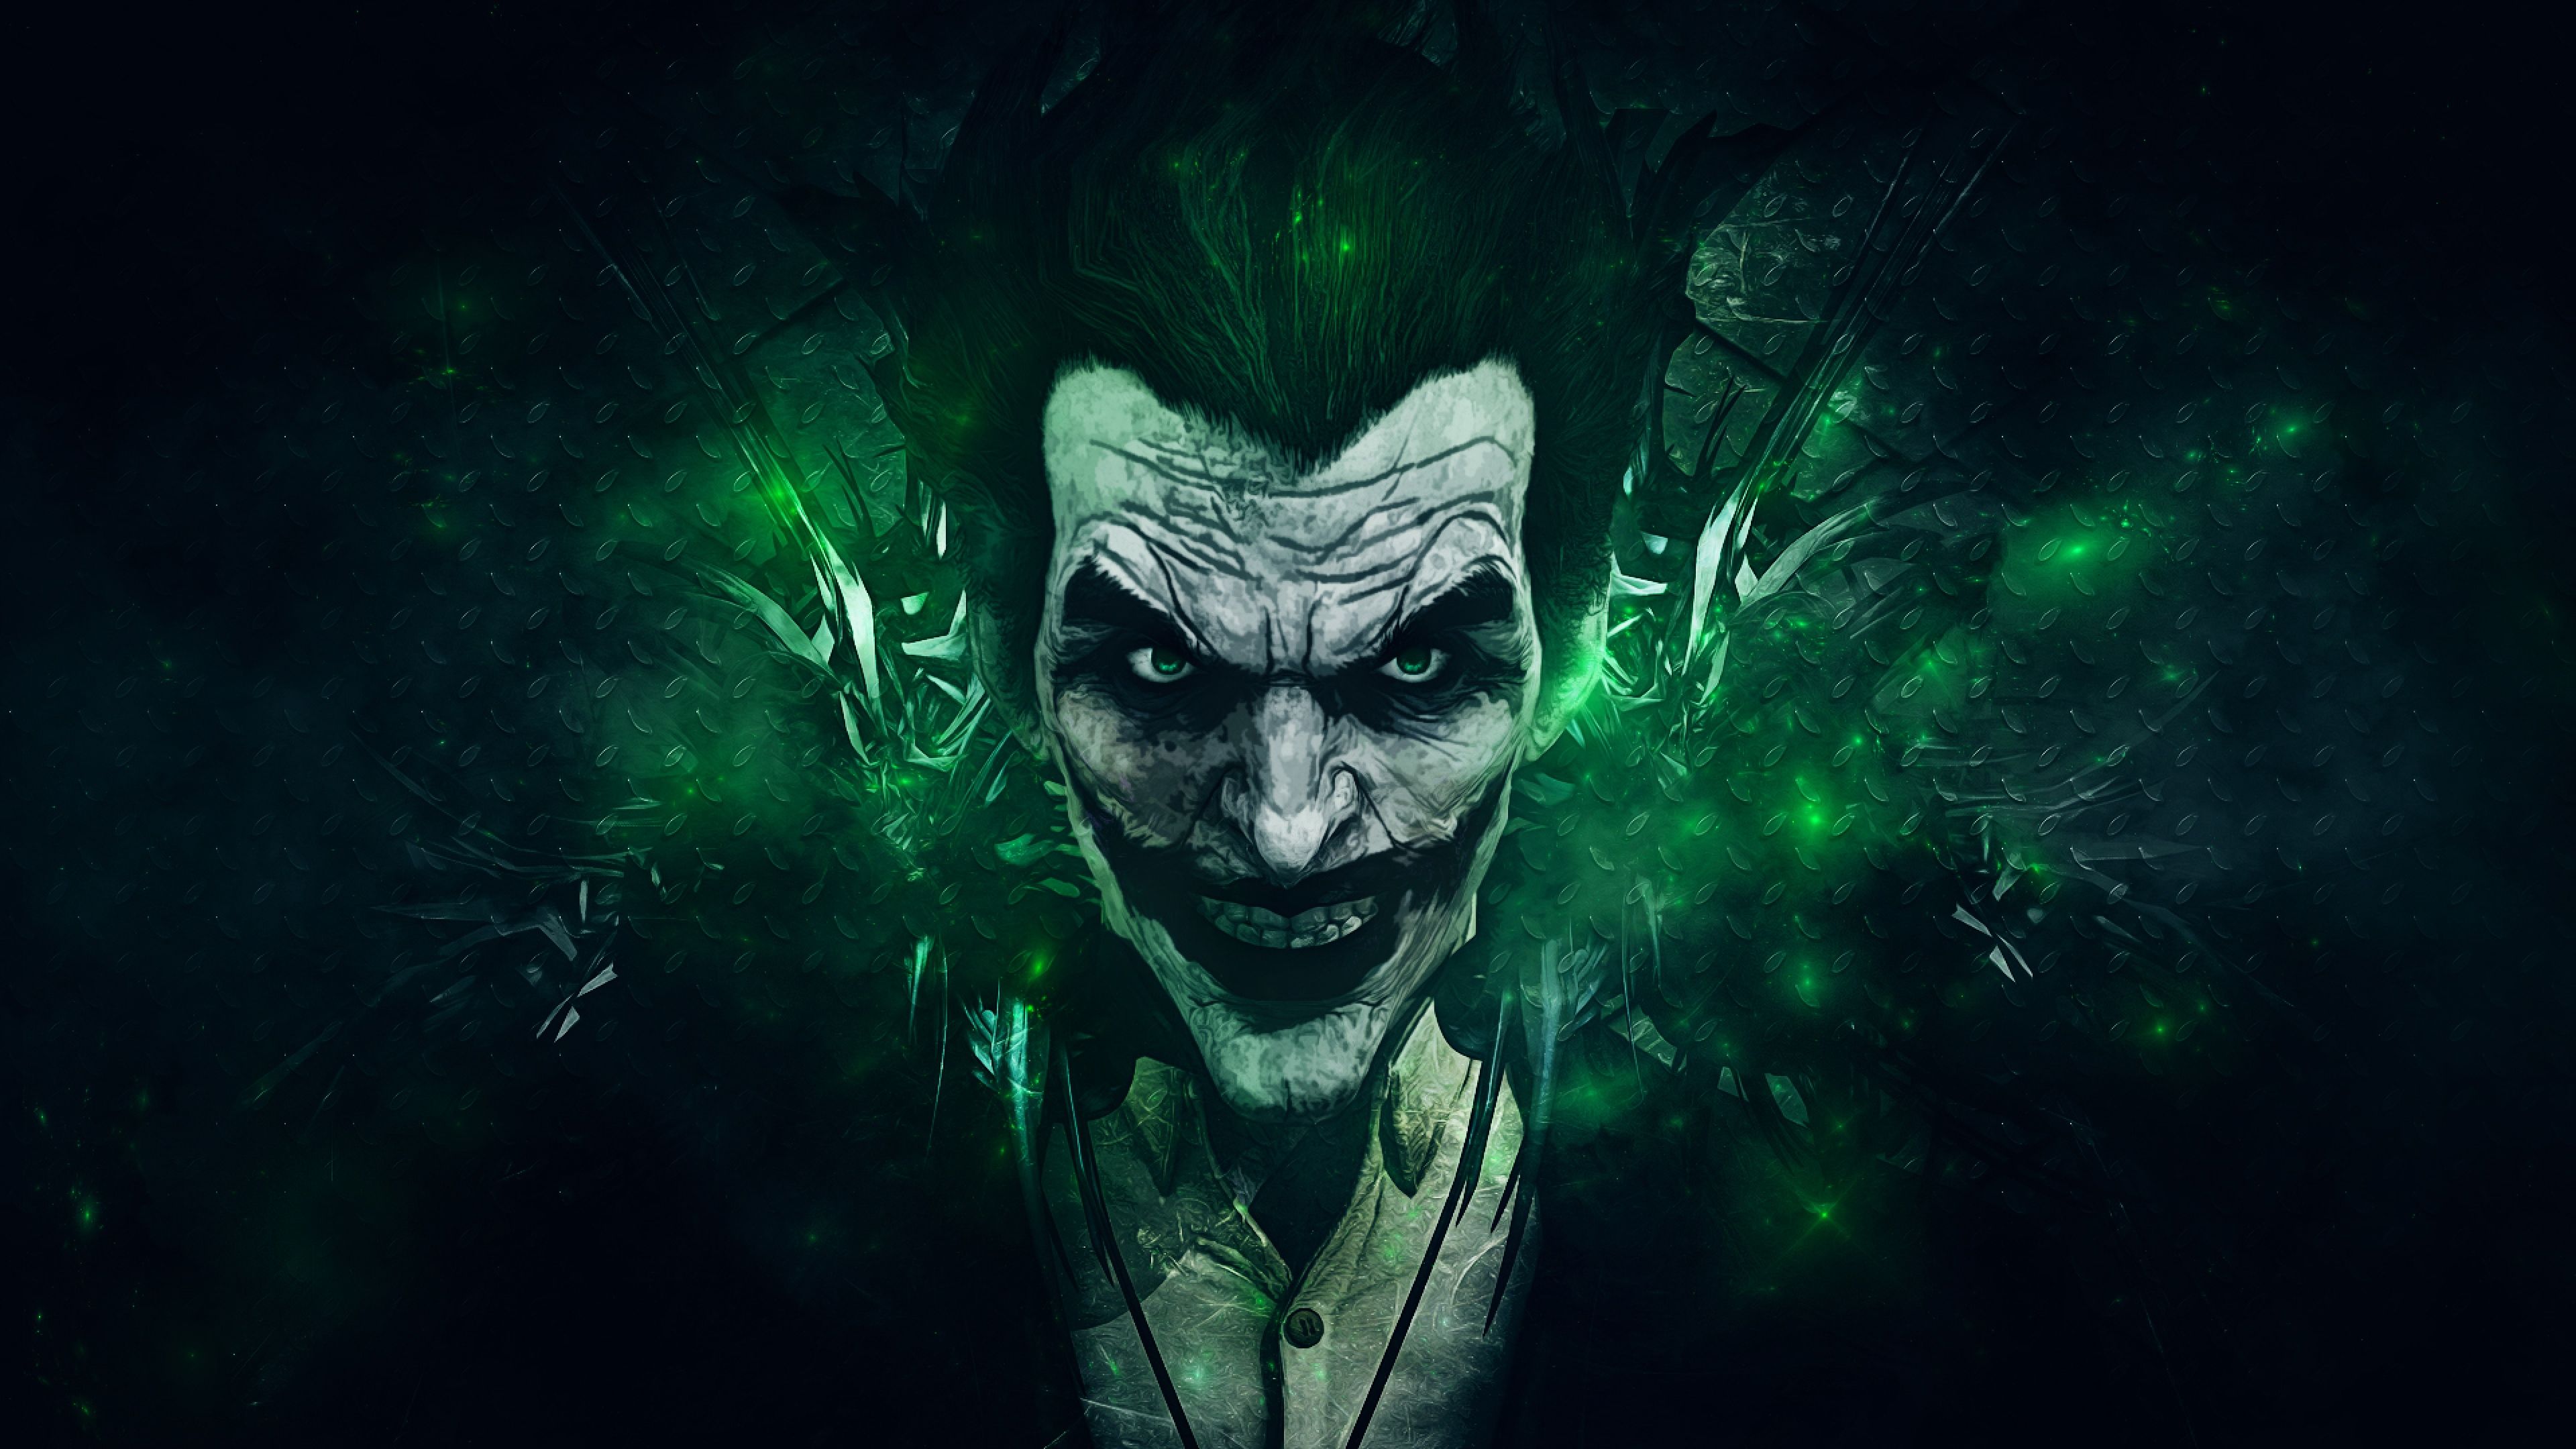 Joker wallpaper for phone